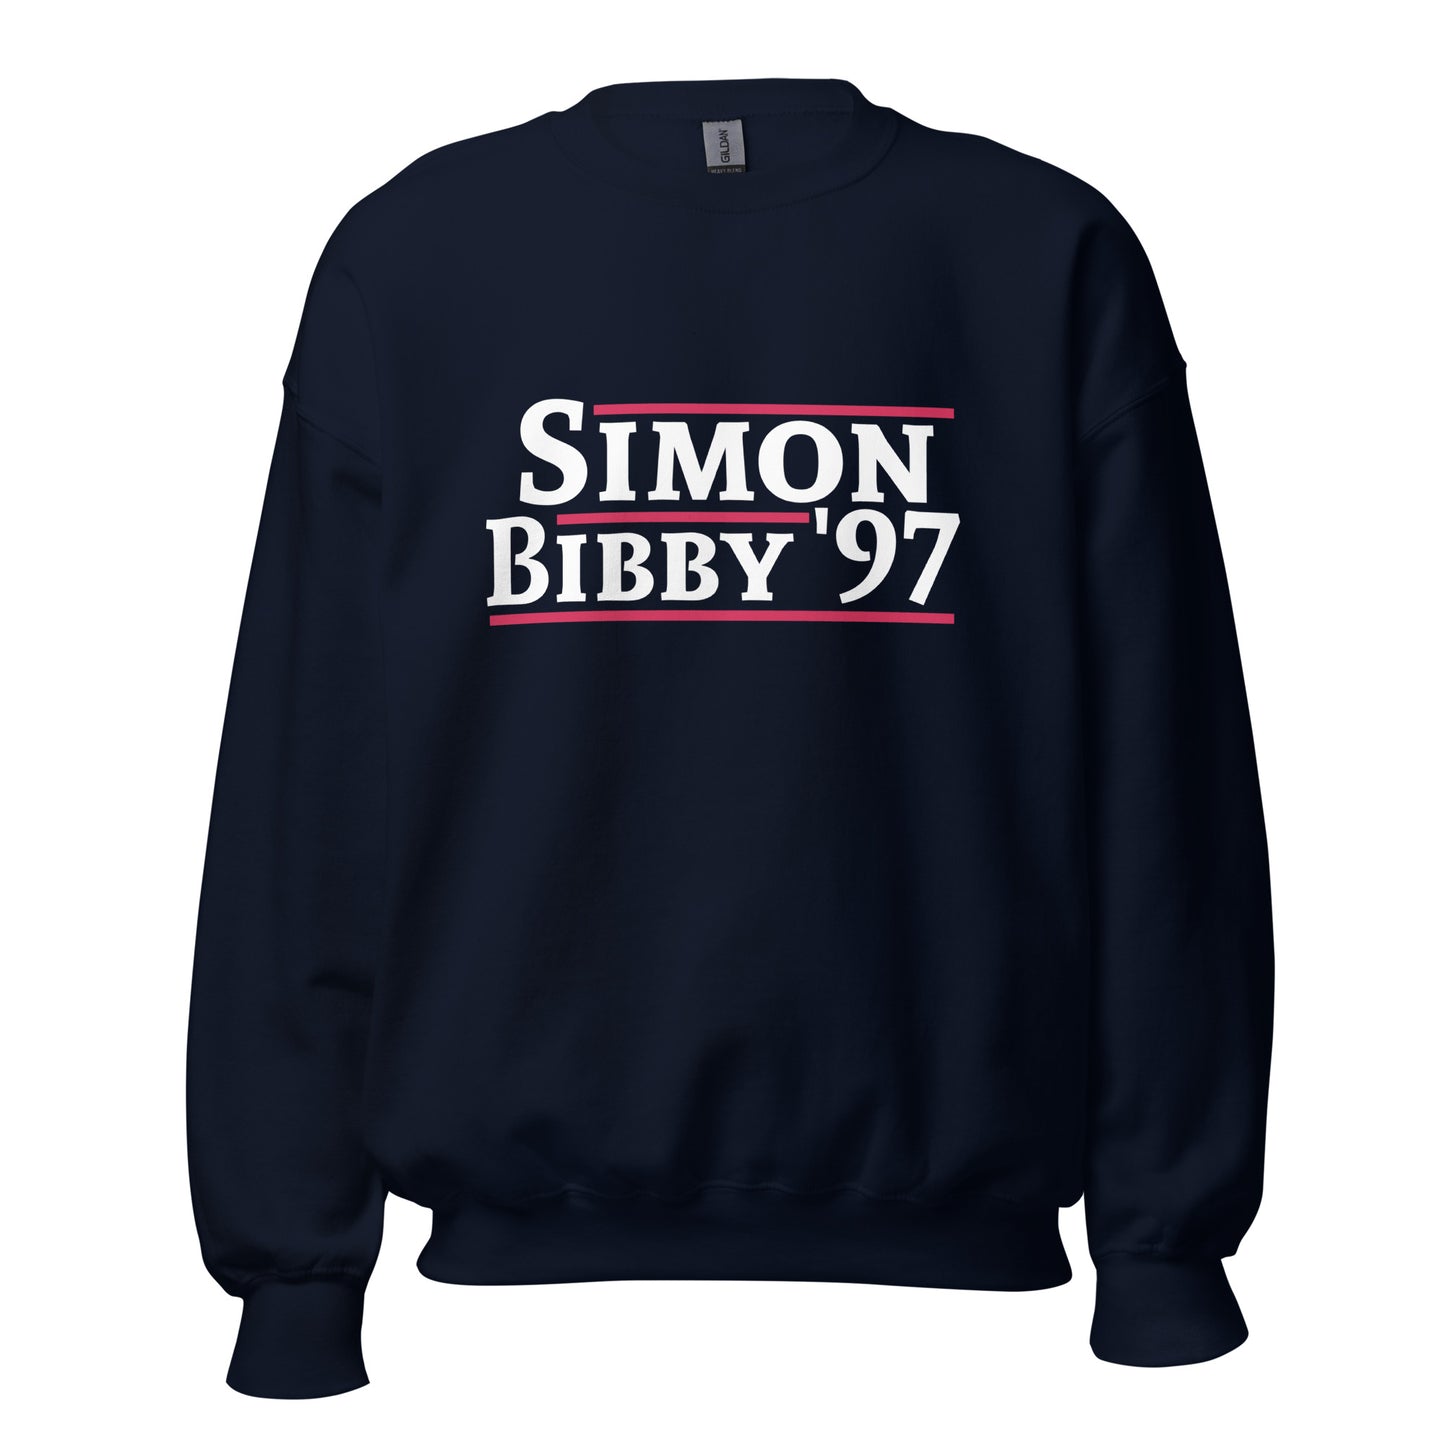 Simon/Bibby '97 - Unisex Sweatshirt